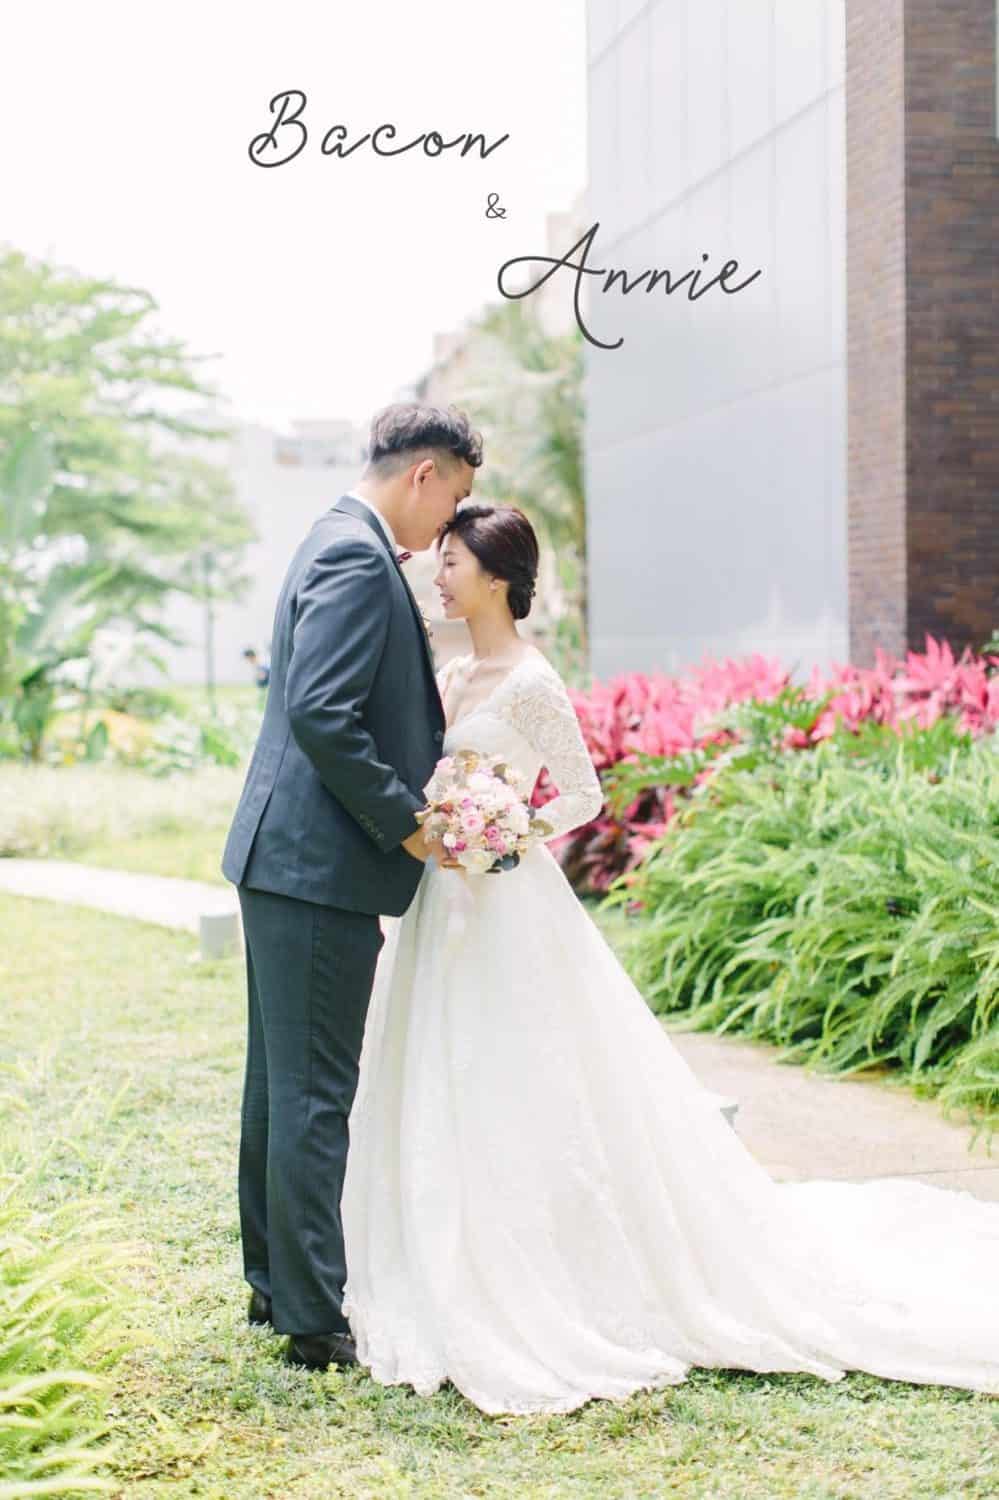 在 台南 的 大員皇冠假日酒店婚禮 場地舉行陽光正好的美式 婚禮 , 是每位新娘夢寐以求的西式婚禮樣式!